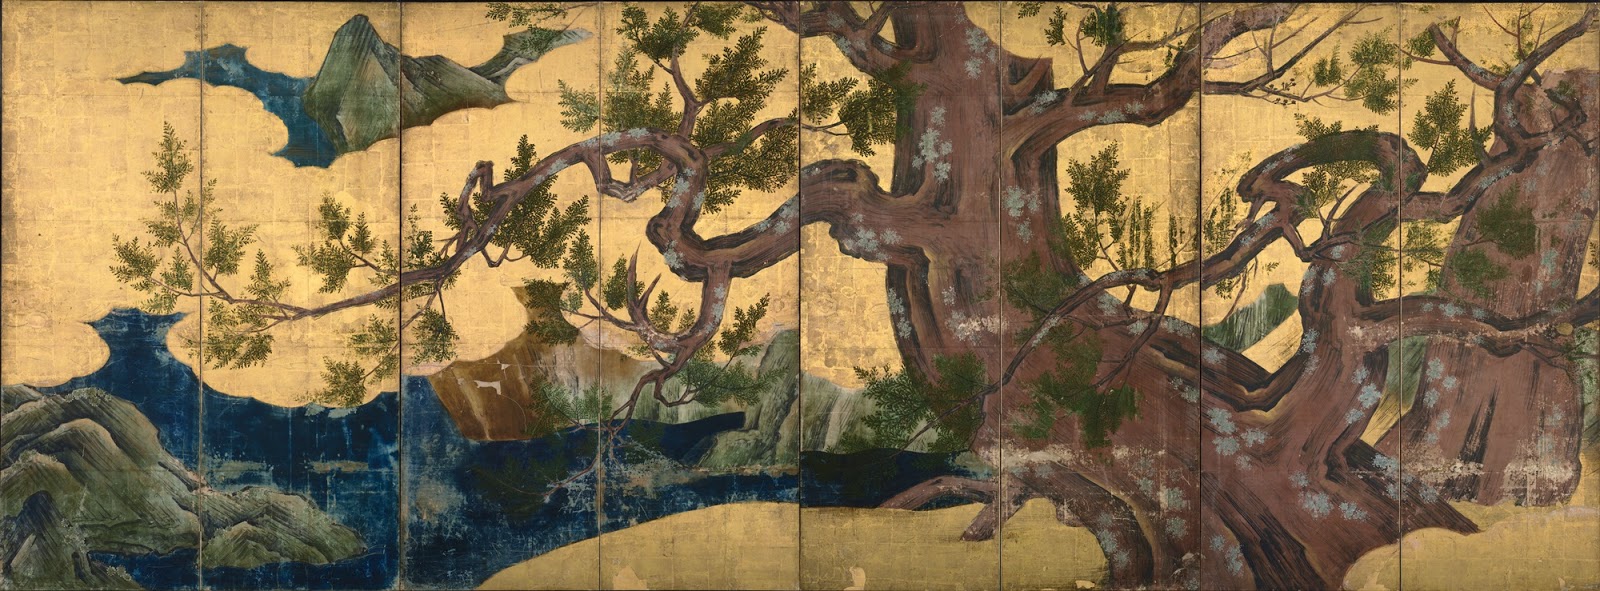 Japón, cultura y arte: Pintura japonesa: la escuela Kanō, III